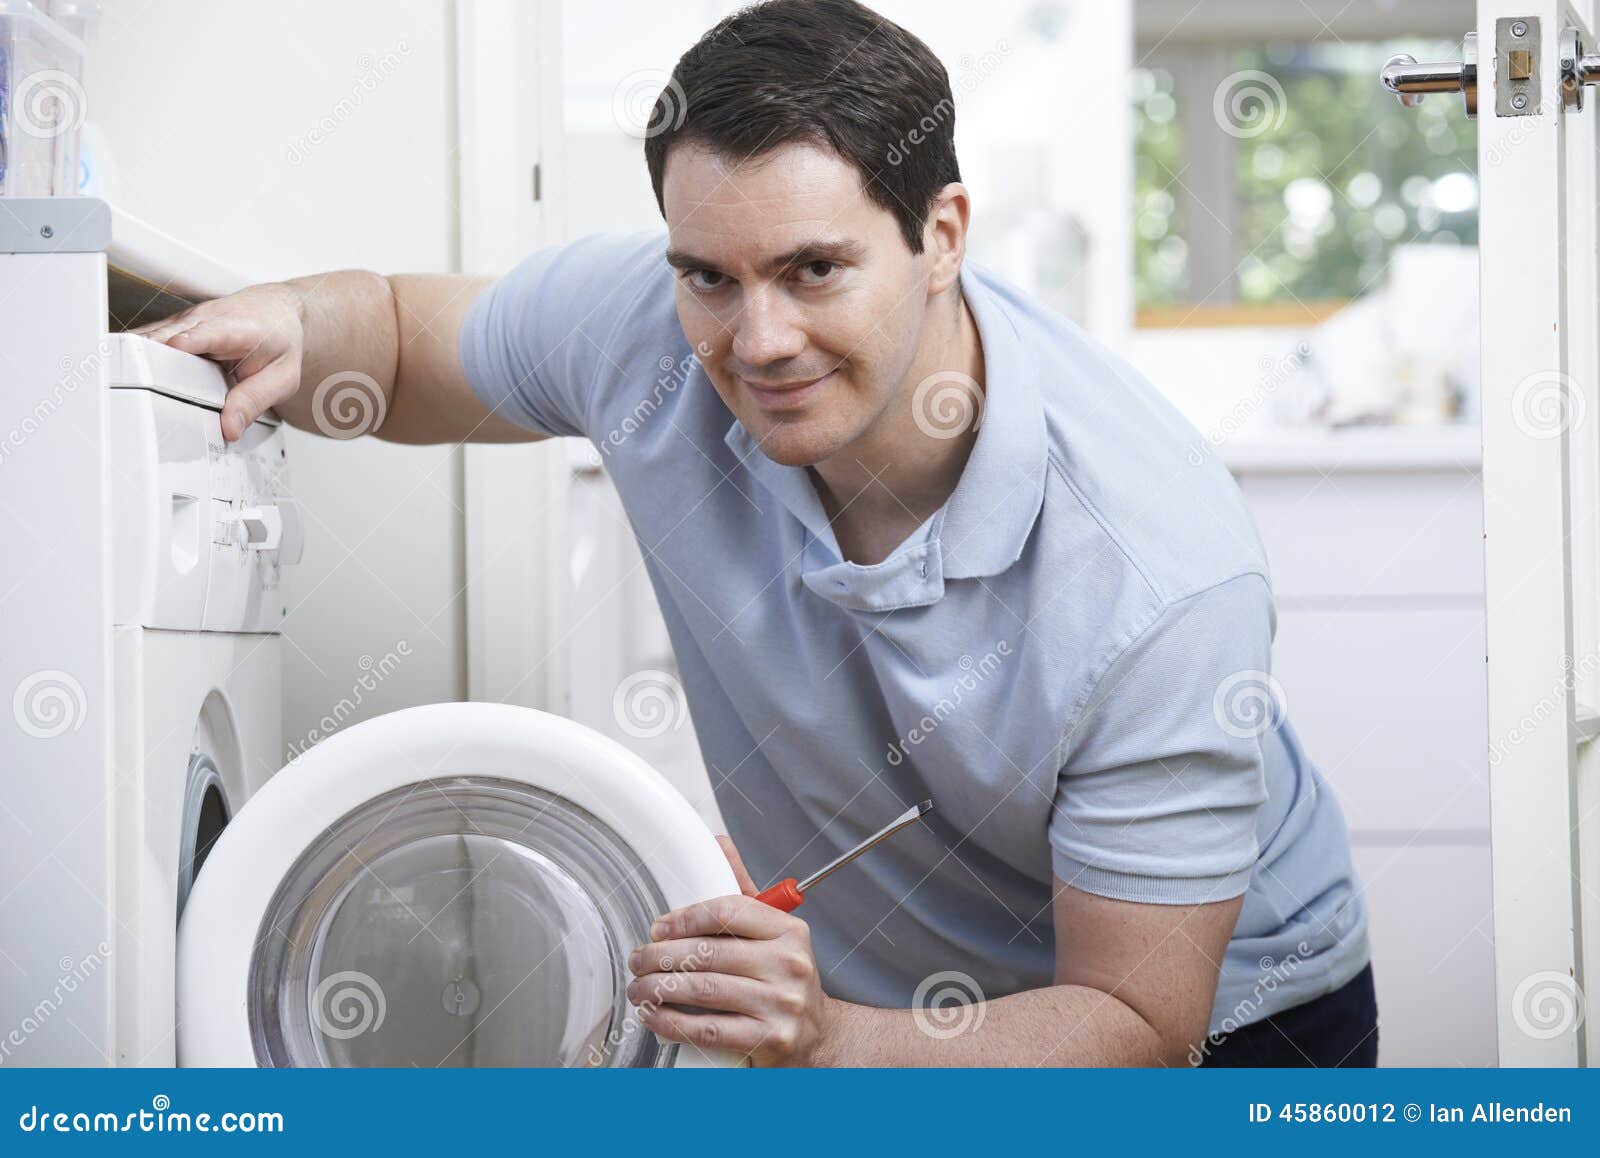 engineer mending domestic washing machine